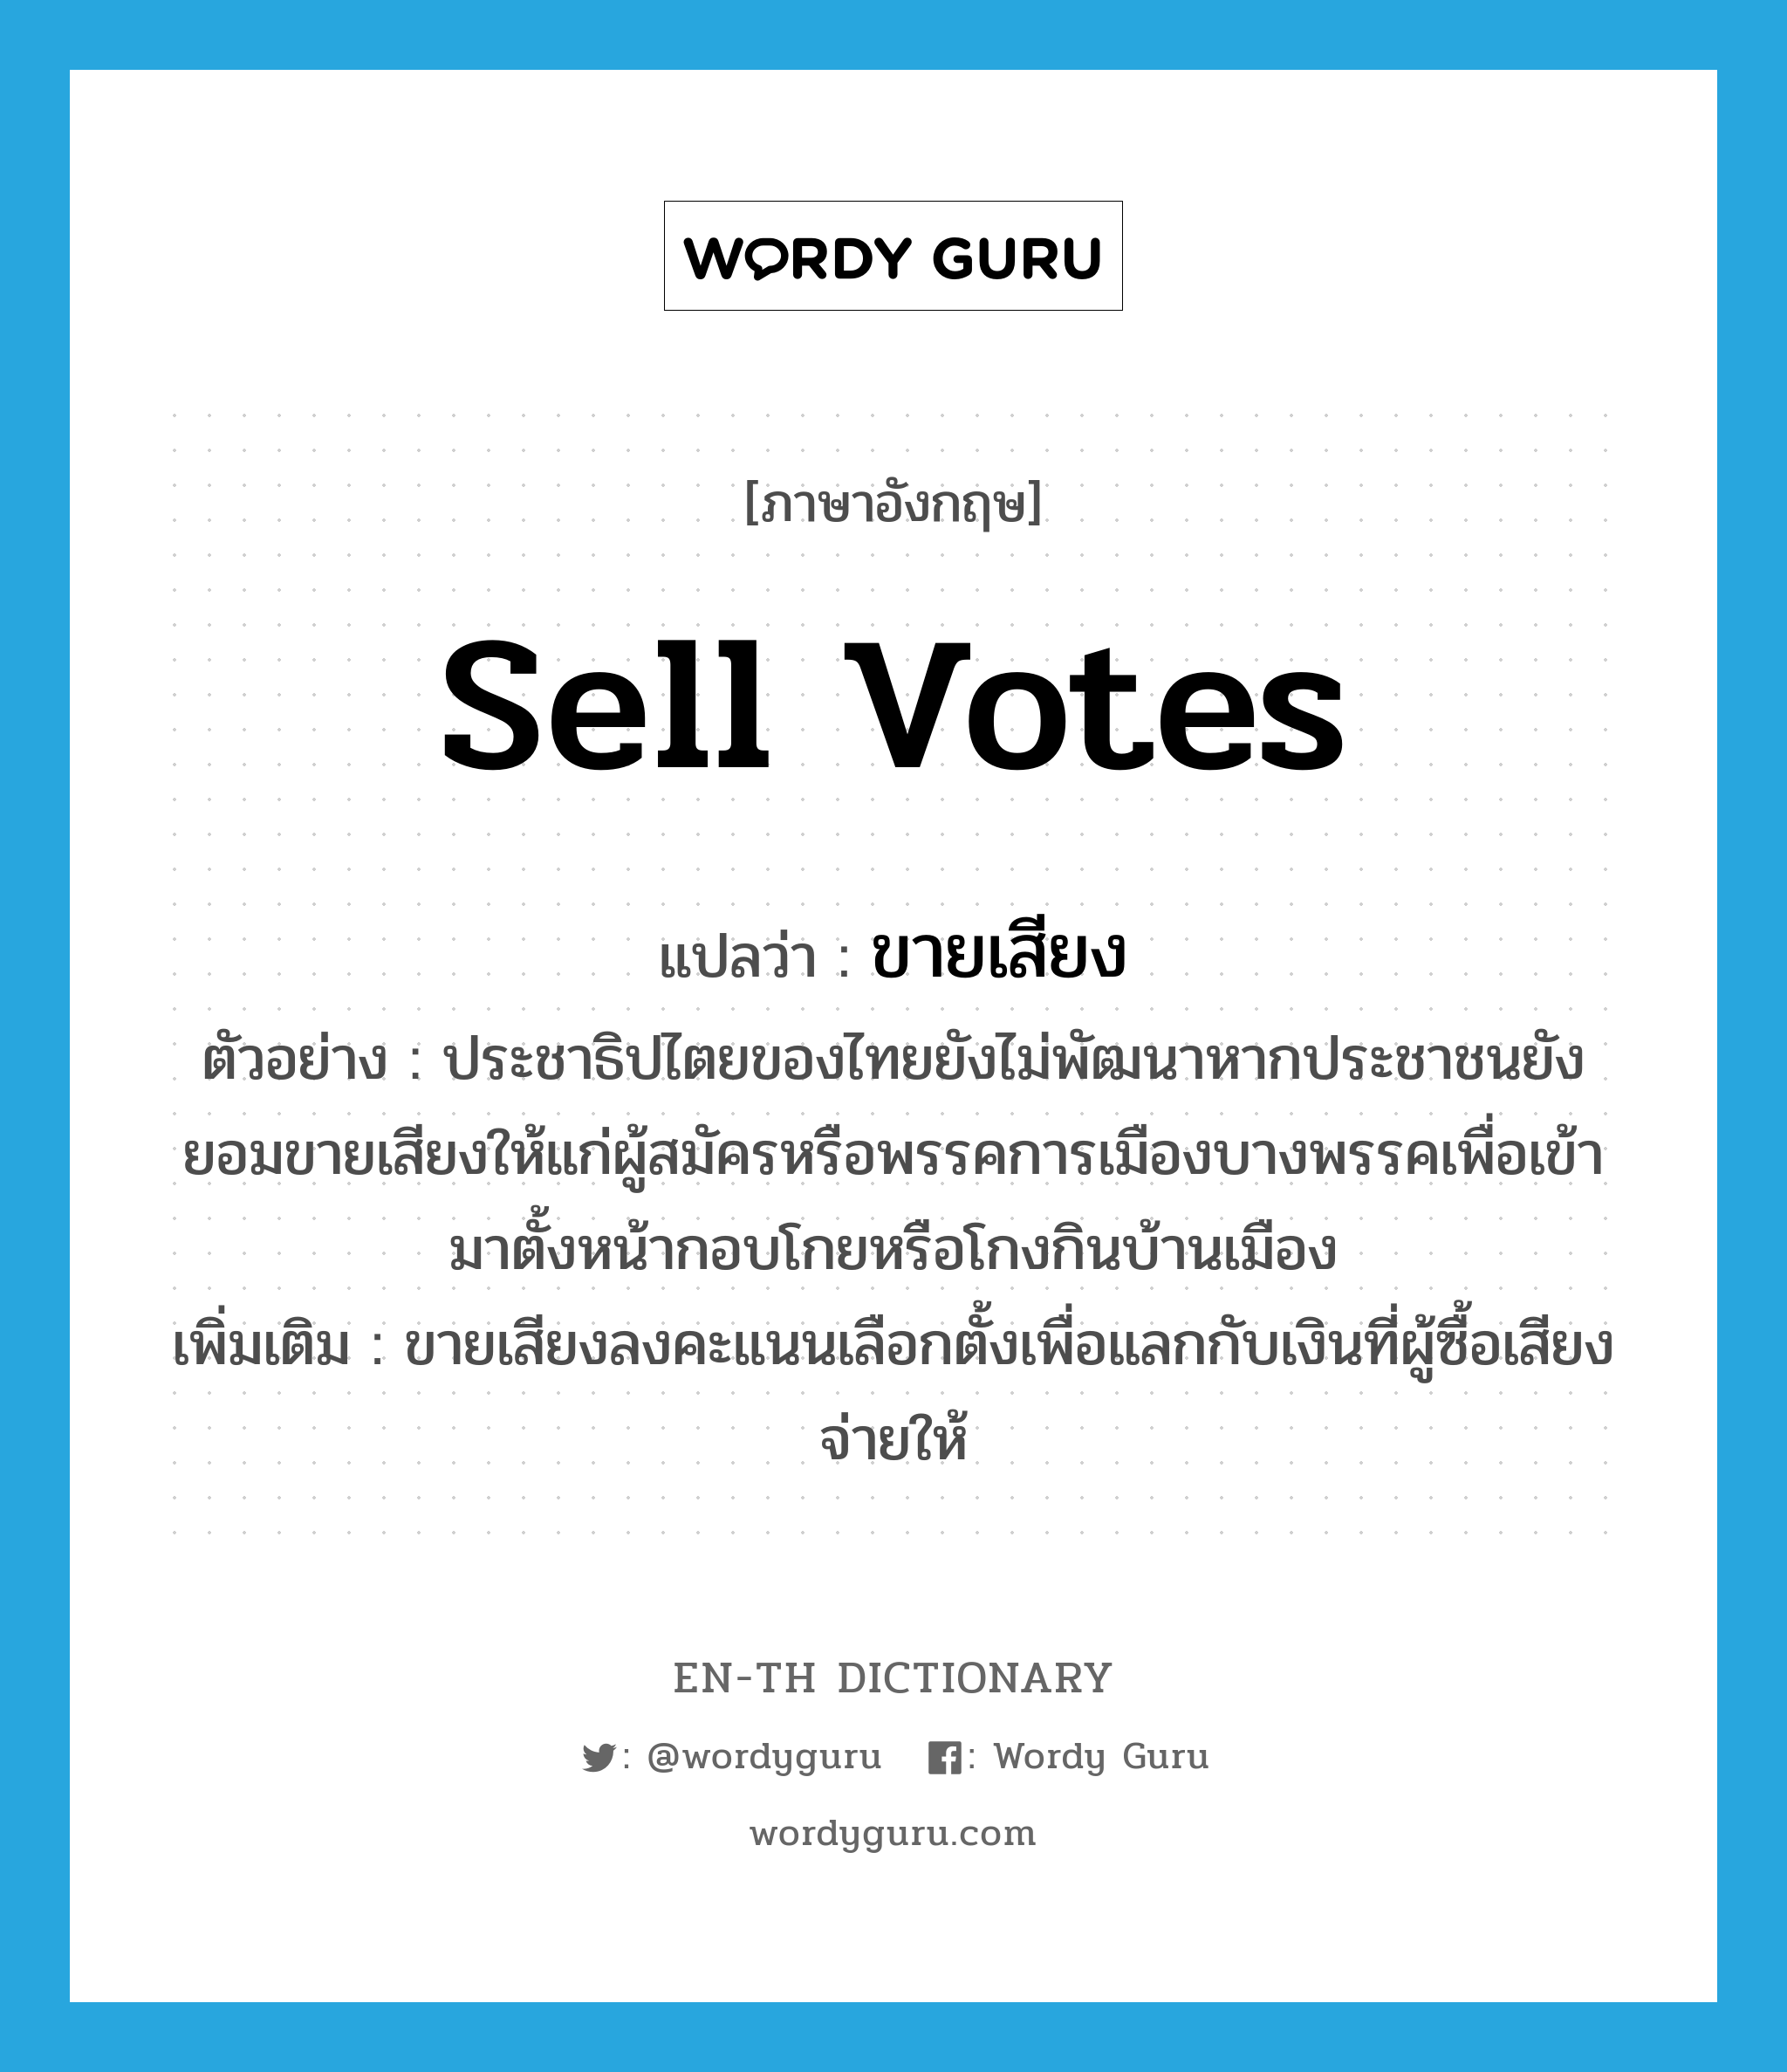 sell votes แปลว่า?, คำศัพท์ภาษาอังกฤษ sell votes แปลว่า ขายเสียง ประเภท V ตัวอย่าง ประชาธิปไตยของไทยยังไม่พัฒนาหากประชาชนยังยอมขายเสียงให้แก่ผู้สมัครหรือพรรคการเมืองบางพรรคเพื่อเข้ามาตั้งหน้ากอบโกยหรือโกงกินบ้านเมือง เพิ่มเติม ขายเสียงลงคะแนนเลือกตั้งเพื่อแลกกับเงินที่ผู้ซื้อเสียงจ่ายให้ หมวด V